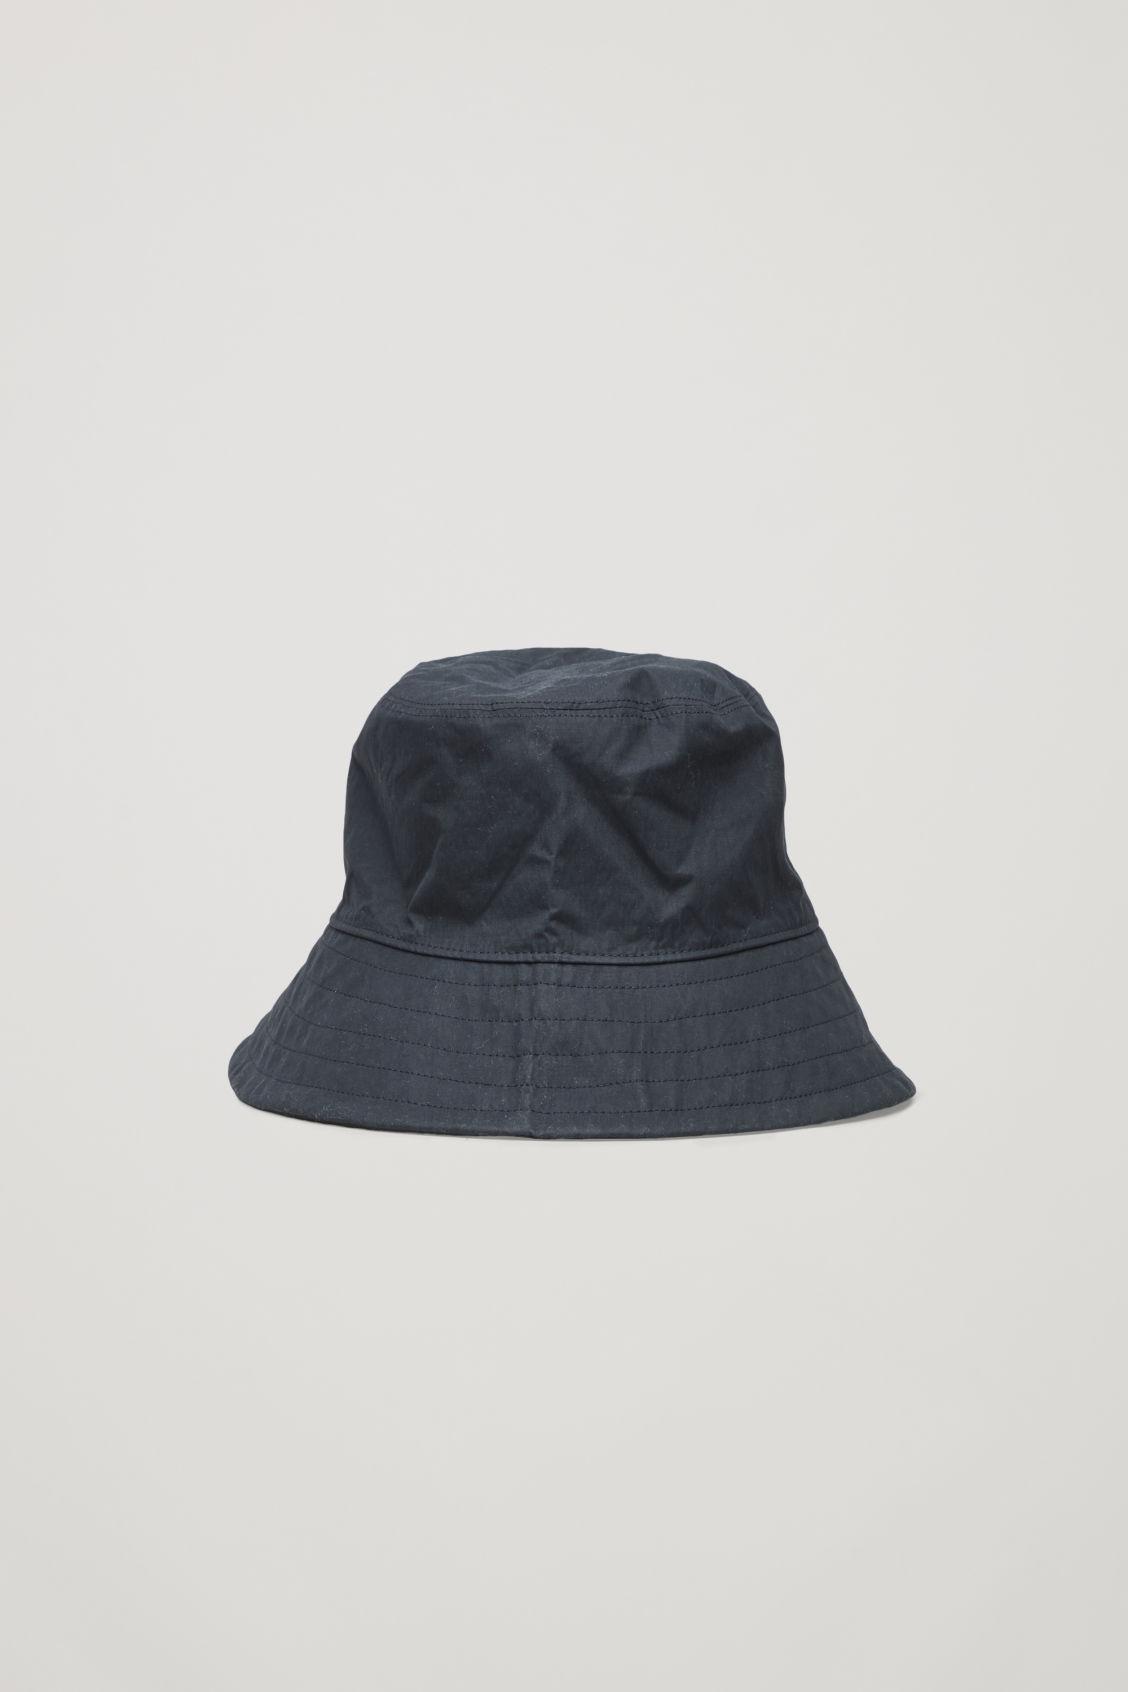 COS Canvas Bucket Hat in Black - Lyst